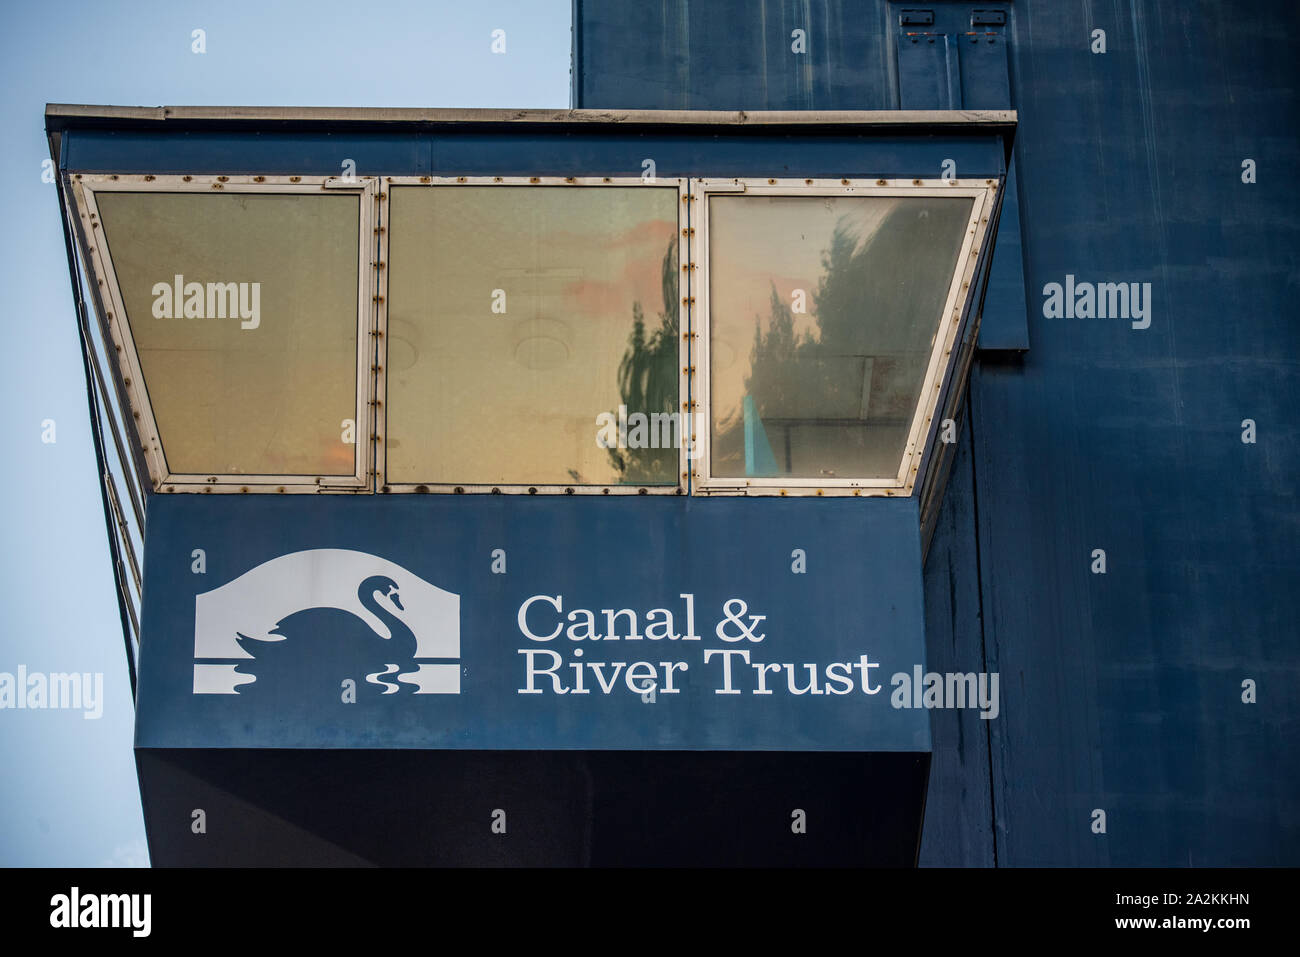 Canal and River Vertrauen - Canal & Flüsse Vertrauen Kontrolle stand auf der blauen Brücke Zugbrücke auf der Isle of Dogs nr Canary Wharf. Eingang West India Docks. Stockfoto